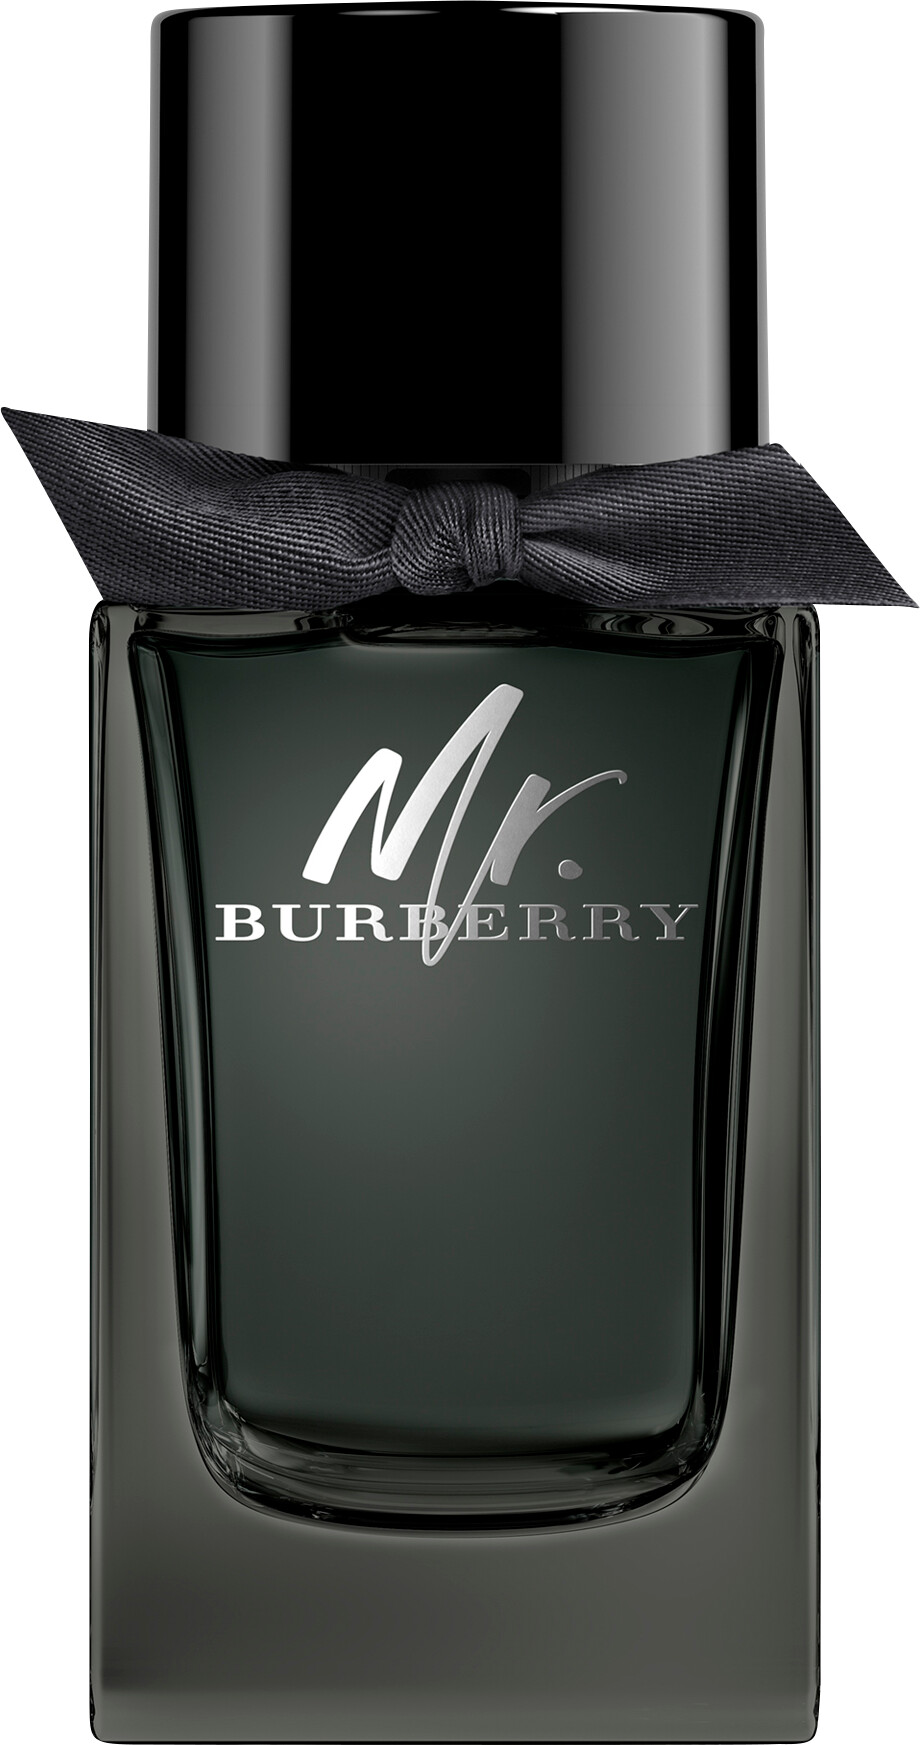 BURBERRY Mr BURBERRY Eau de Parfum Spray 100ml